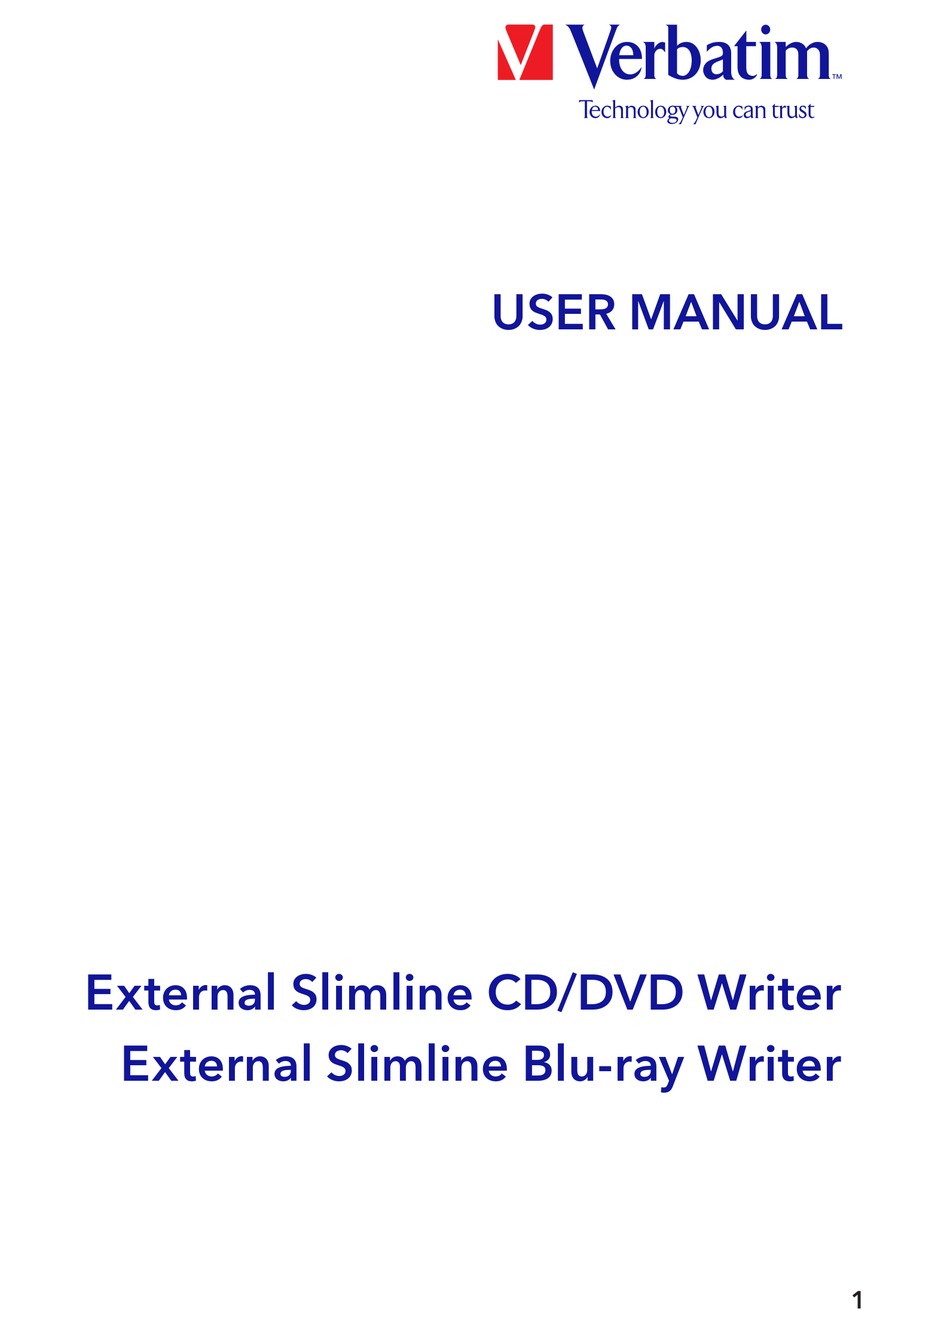 VERBATIM EXTERNAL SLIMLINE CD/DVD WRITER USER MANUAL Pdf Download